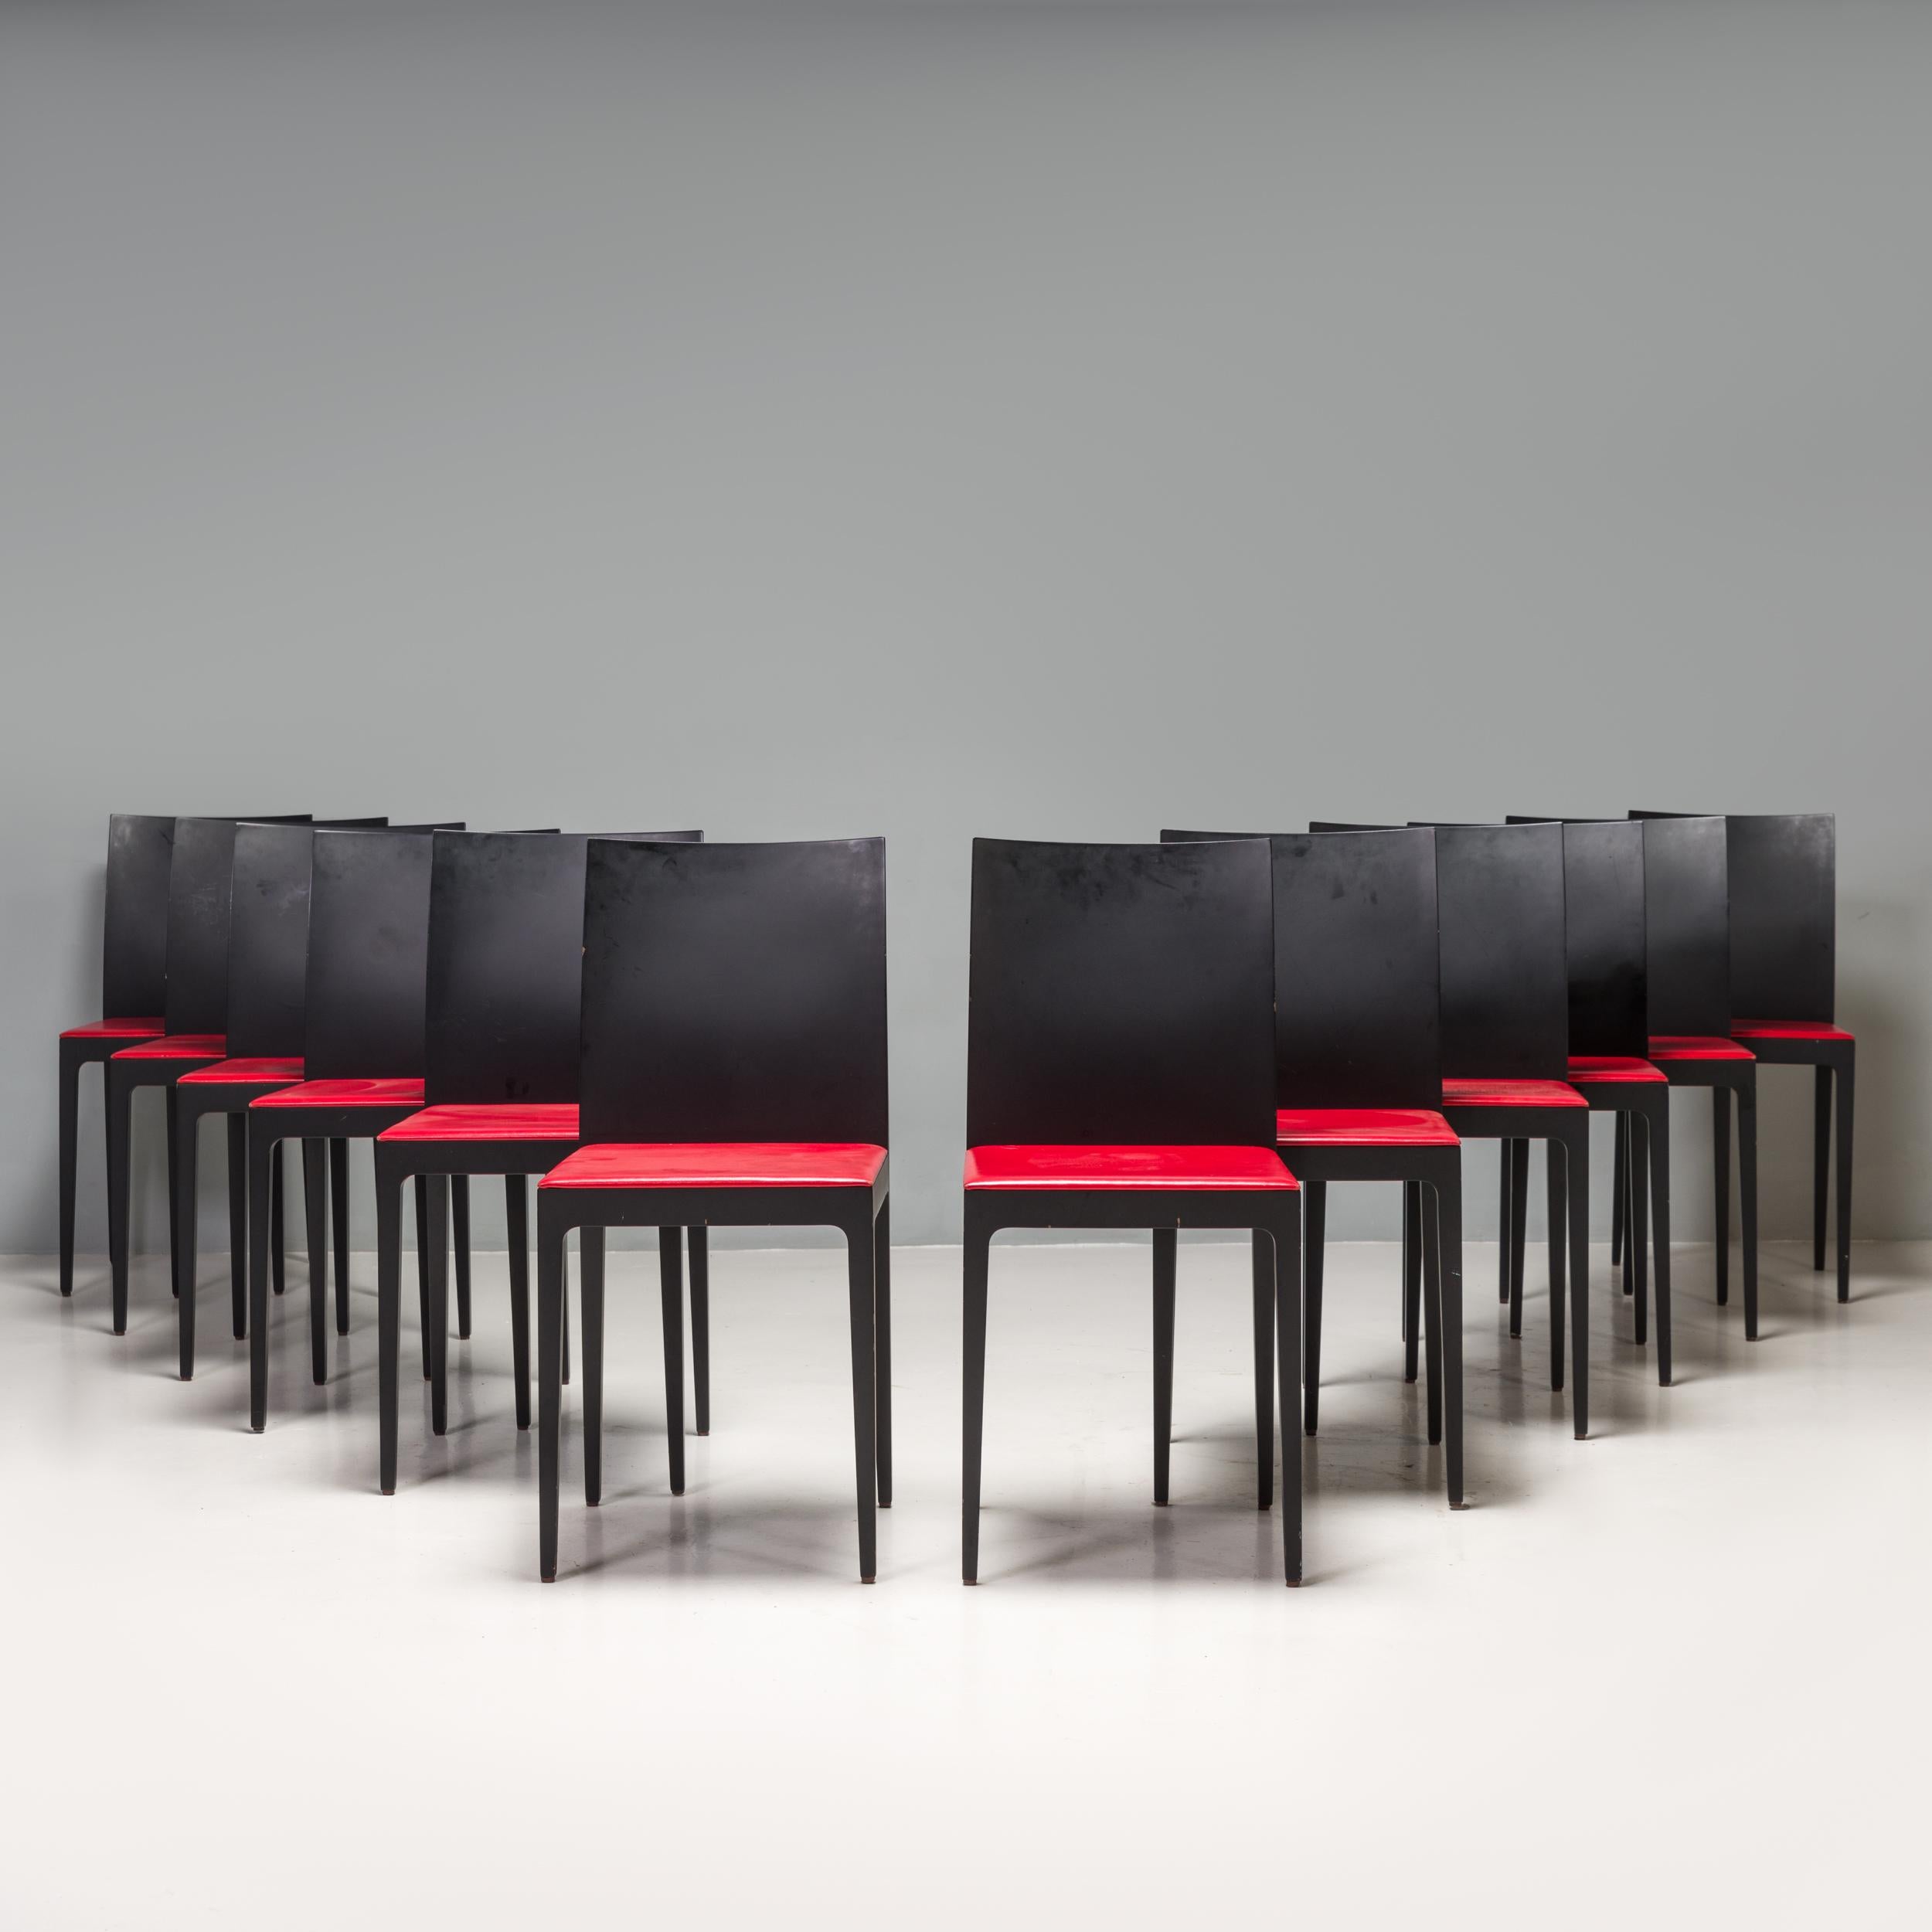 Der von Ludovica und Roberto Palomba entworfene und von Crassevig hergestellte Stuhl Anna R vereint auf perfekte Weise modernes italienisches Design und skandinavischen Stil.

Die Stühle bestehen aus einem massiven Eichenholzrahmen mit einer